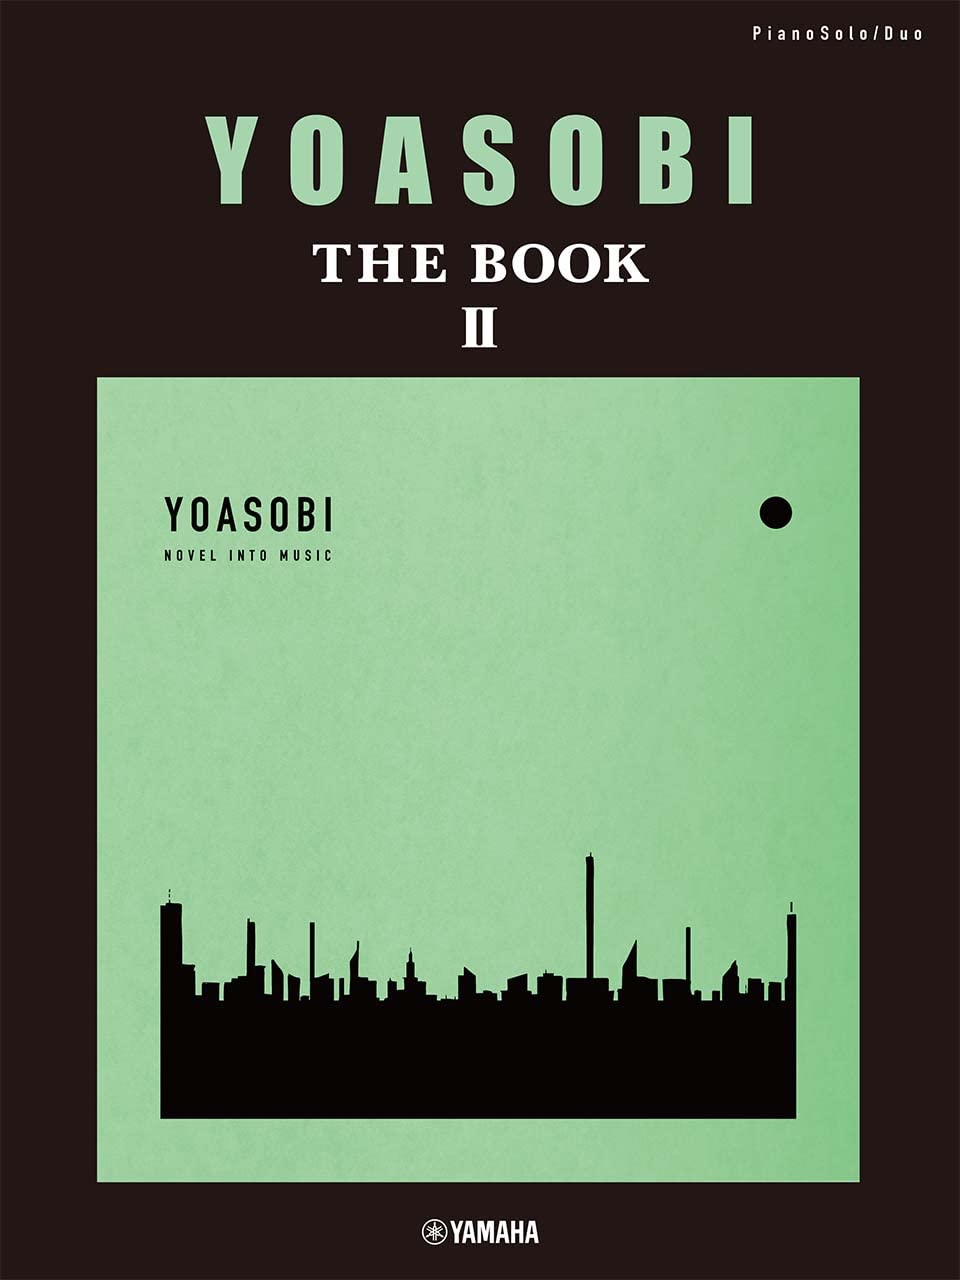 YOASOBI "THE BOOK 2" for Piano Solo and Piano Duet